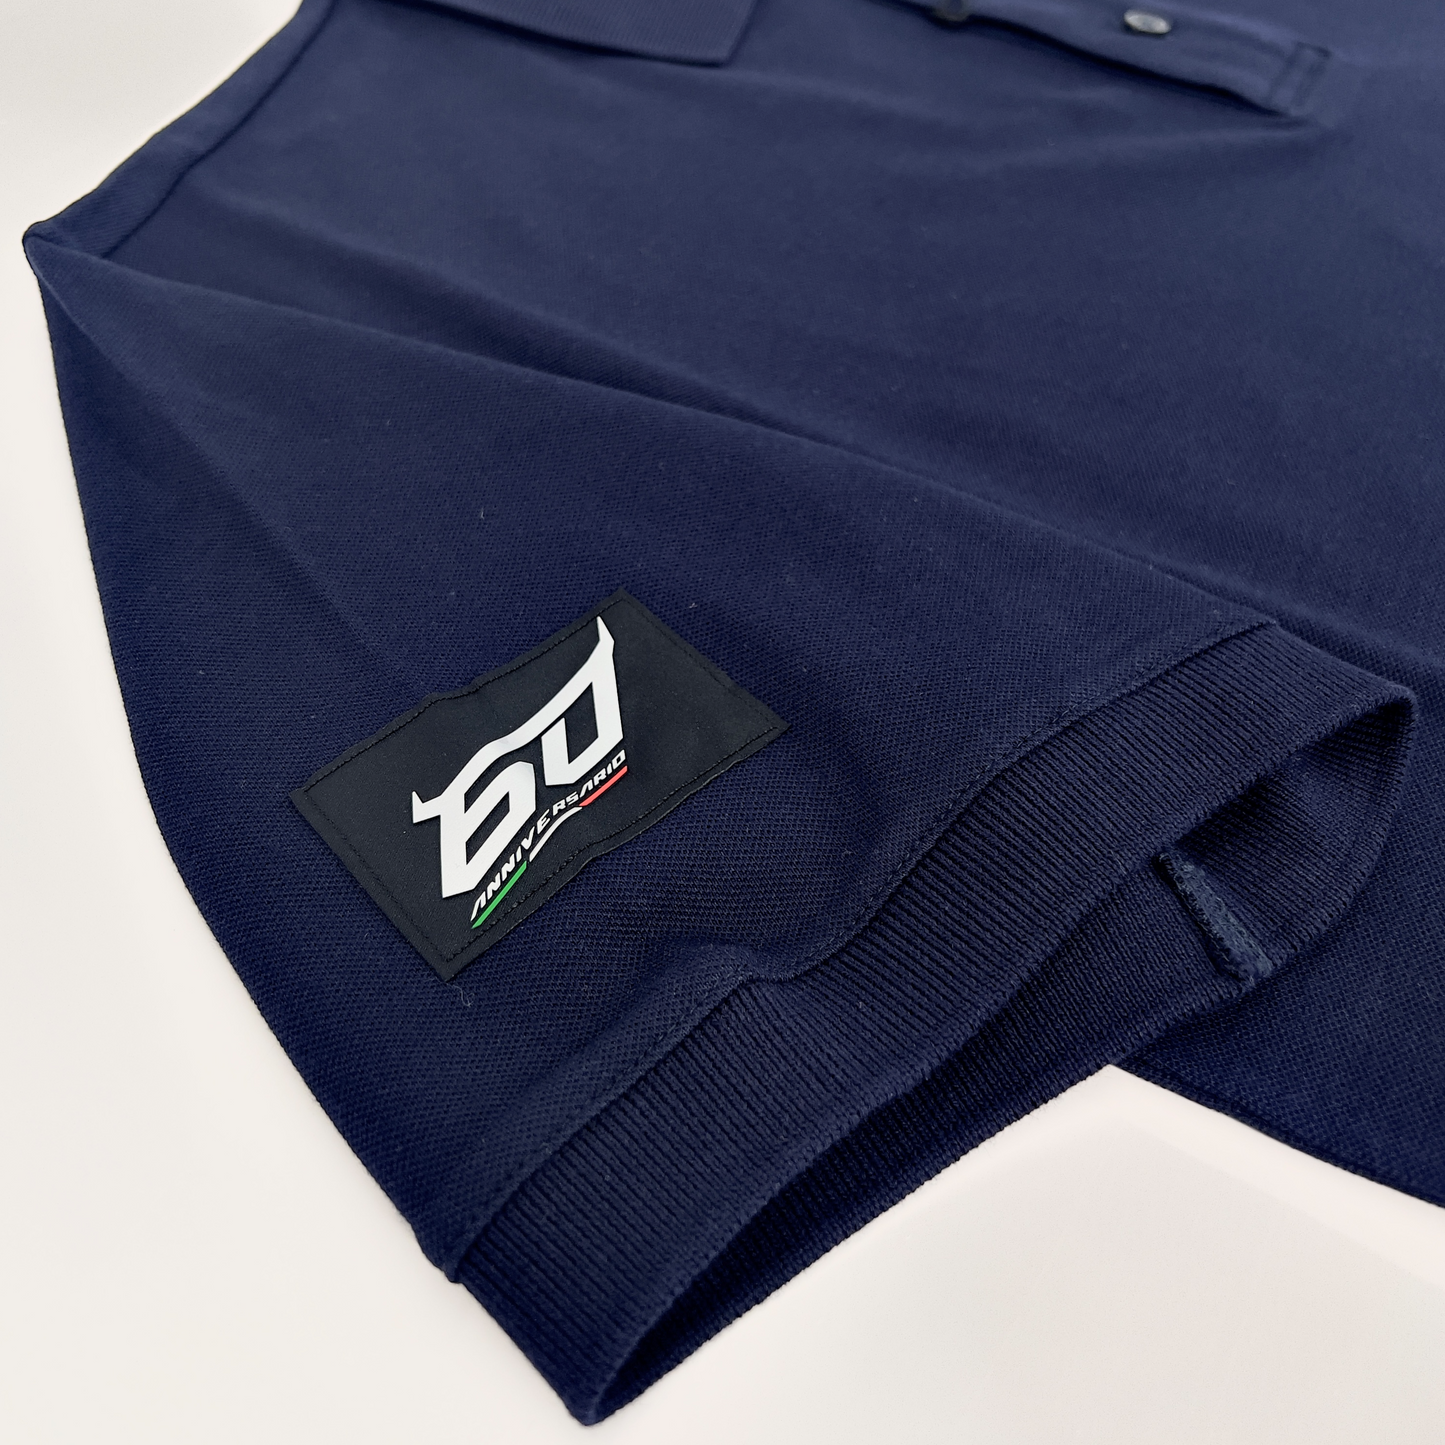 Lamborghini Men's 60th Anniversary Polo Shirt